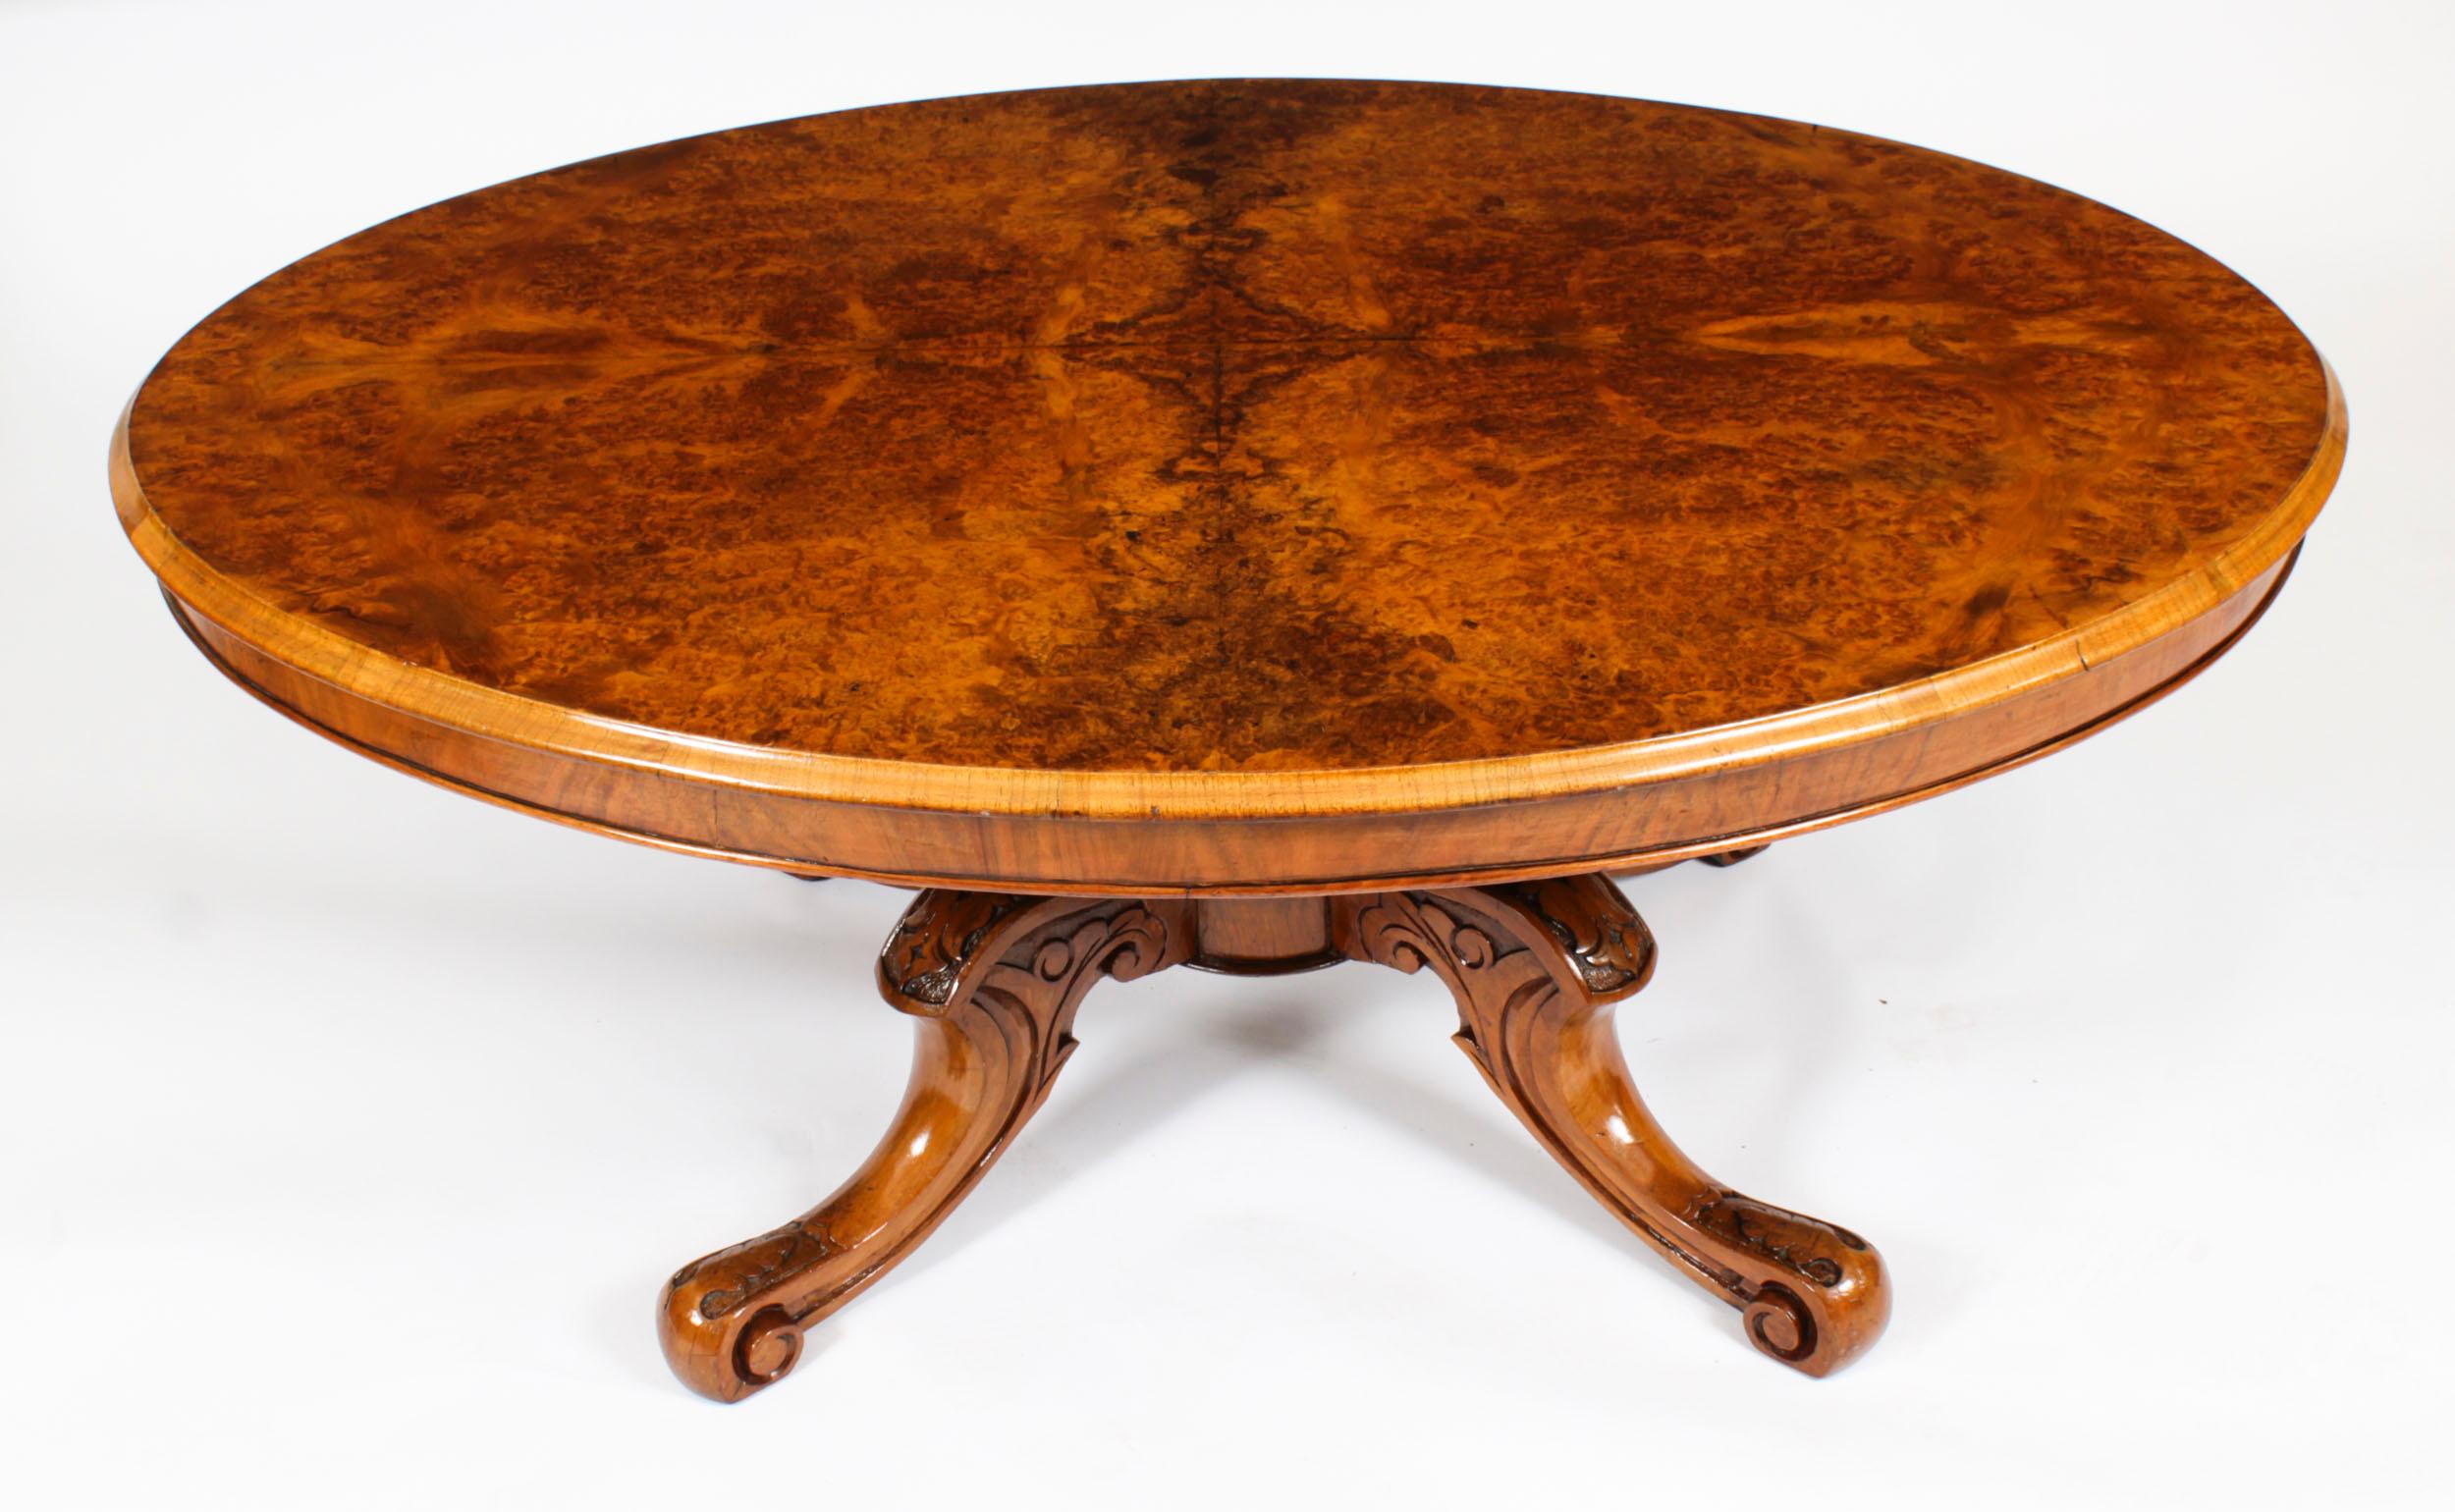 Voici une très belle table basse victorienne en ronce de noyer, datant d'environ 1860.

Le plateau de la table ovale est recouvert d'un placage de ronce de noyer magnifiquement figuré.

La base a été sculptée à la main dans du noyer massif et repose